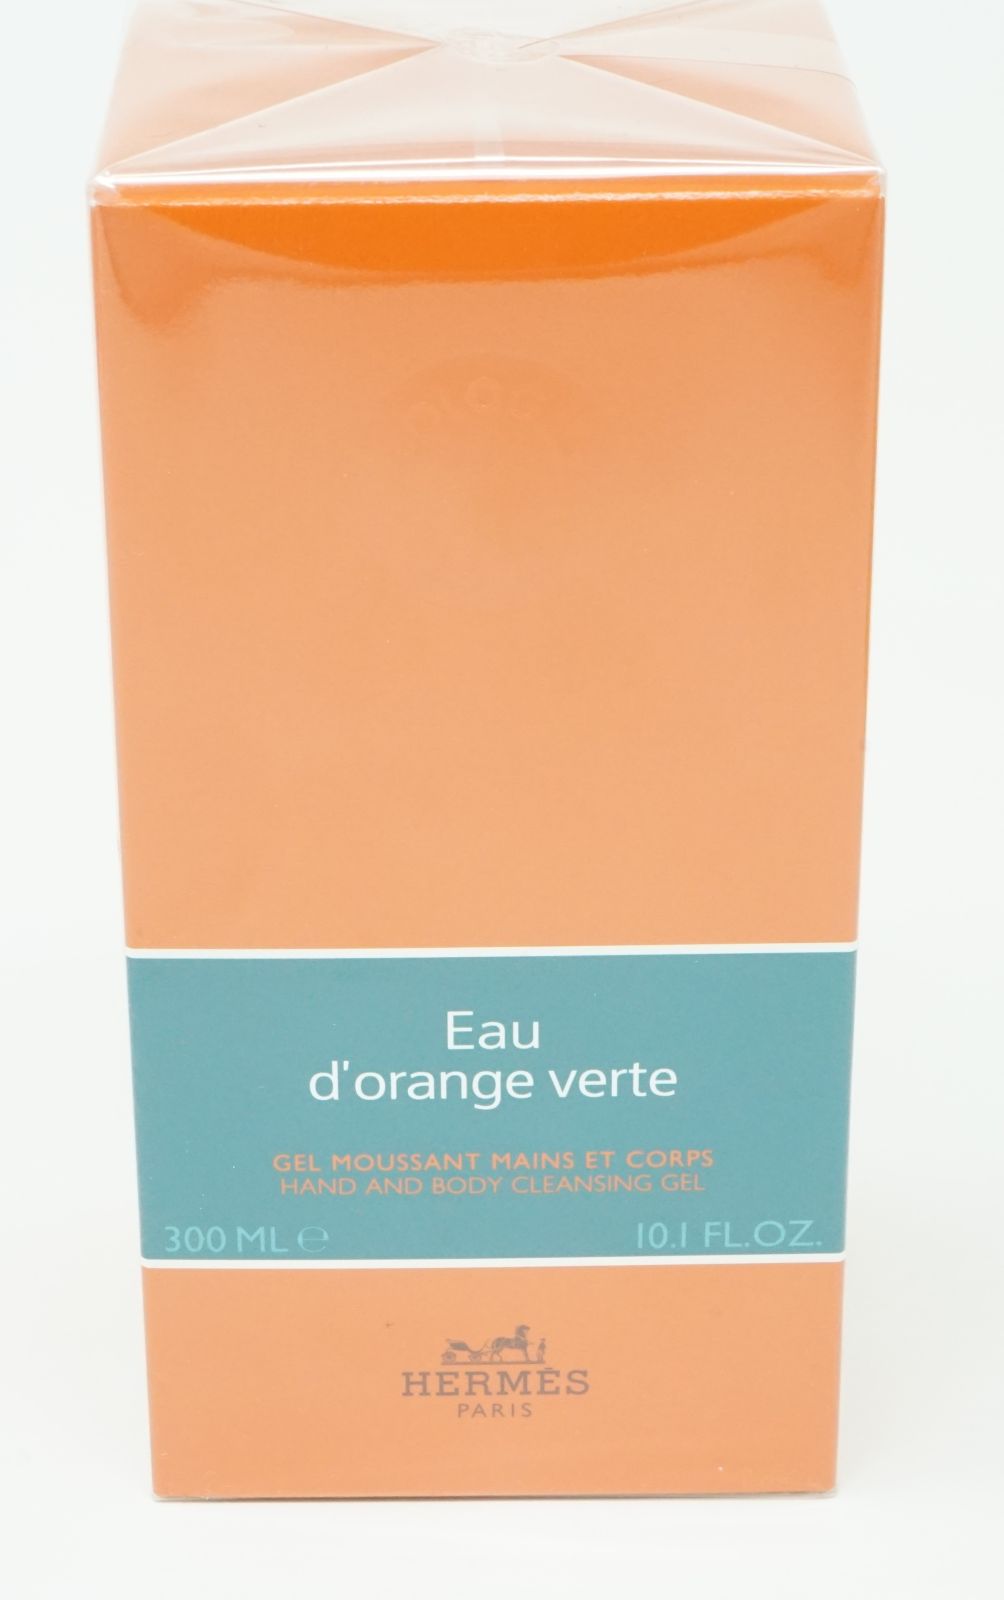 Hermes Eau d'Orange Verte Hand and Body Cleansing Gel 300 ml